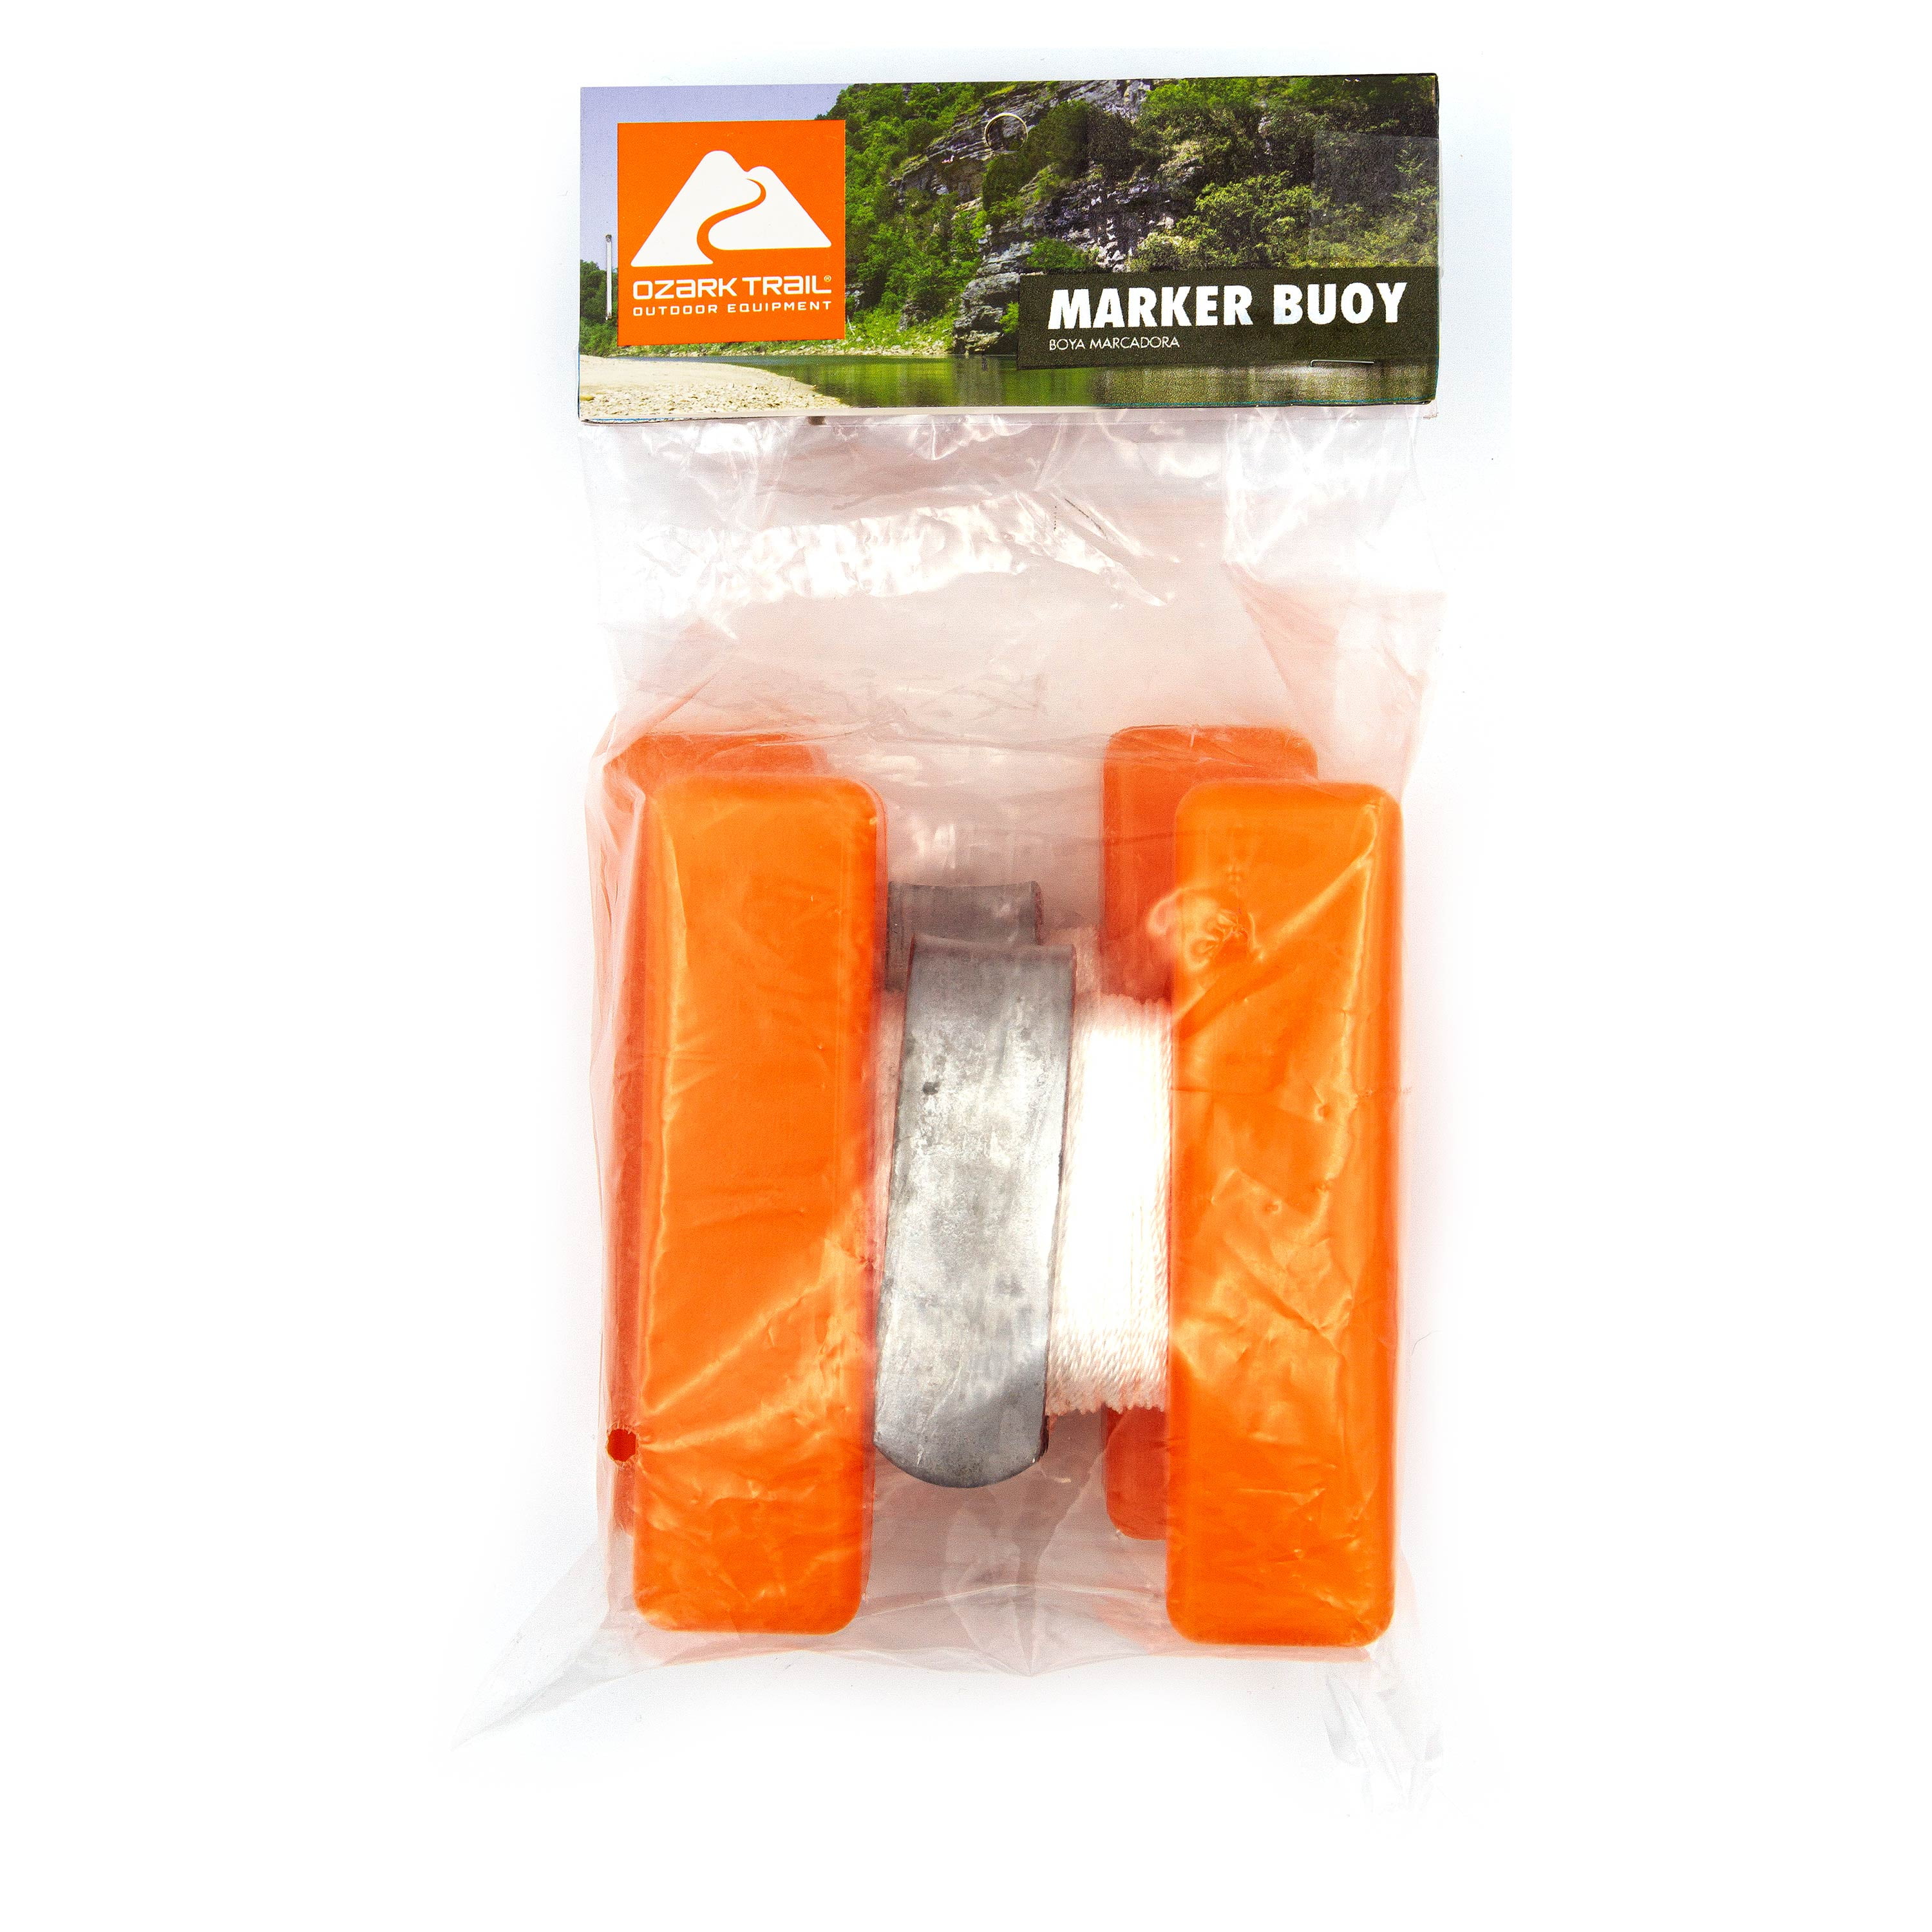 Ozark Trail 2-Pack Marker Buoy - Orange 